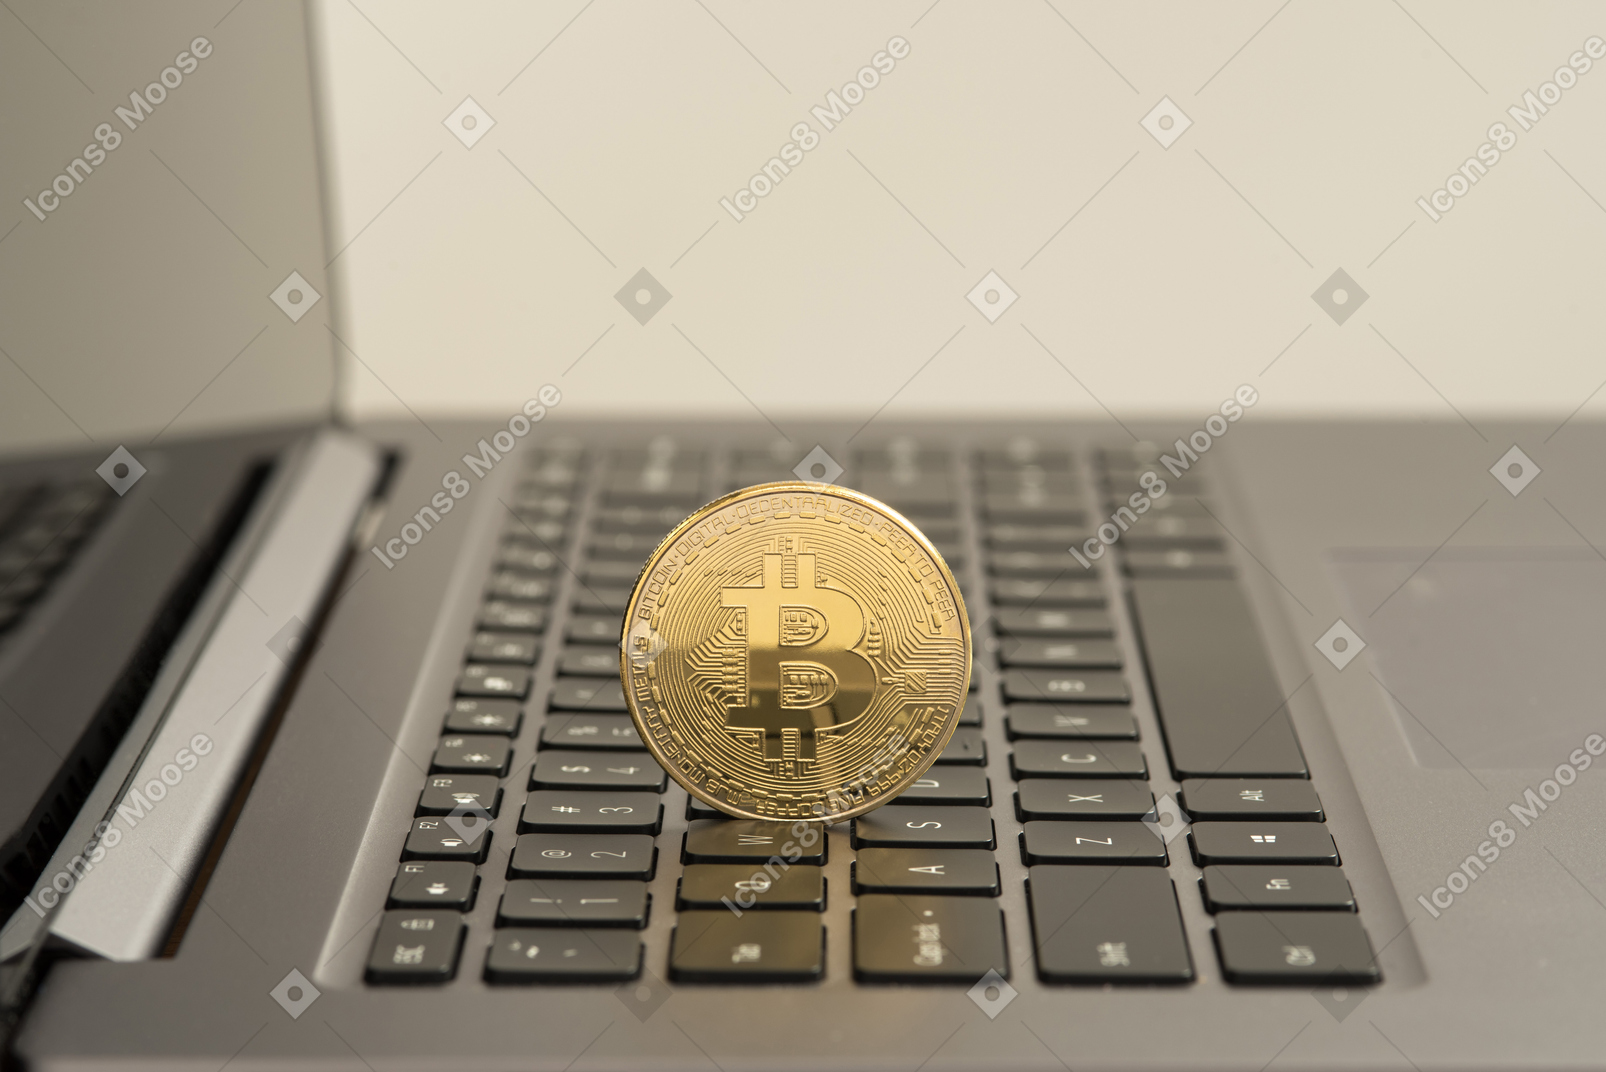 Bitcoin-bargeld